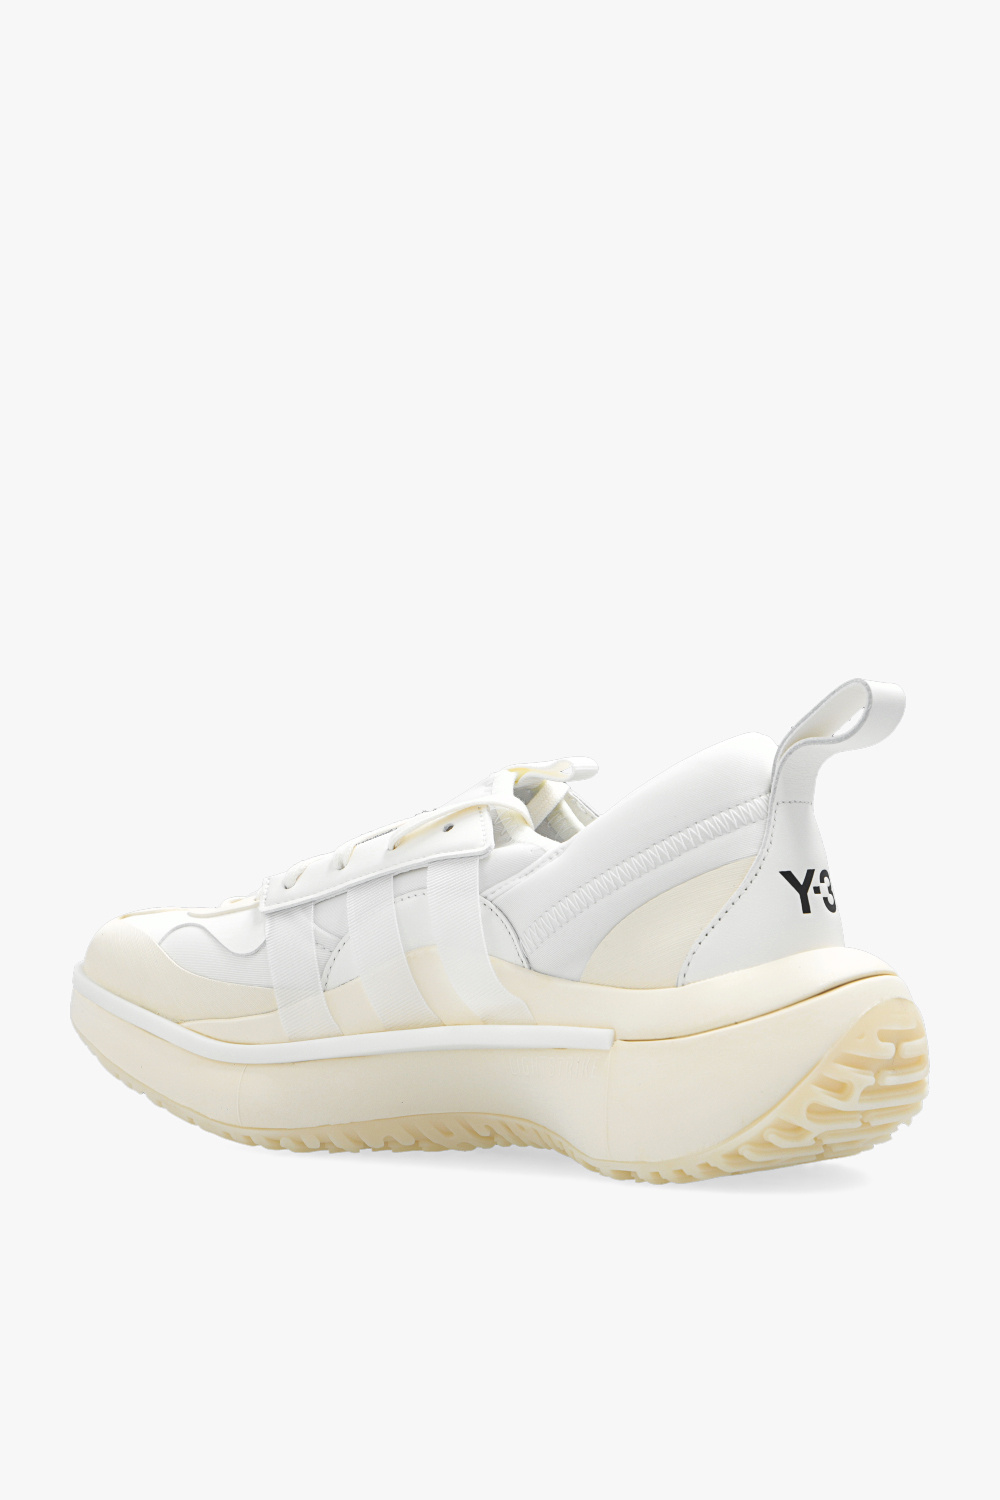 Y-3 Yohji Yamamoto ‘Qisan Cozy II’ sneakers